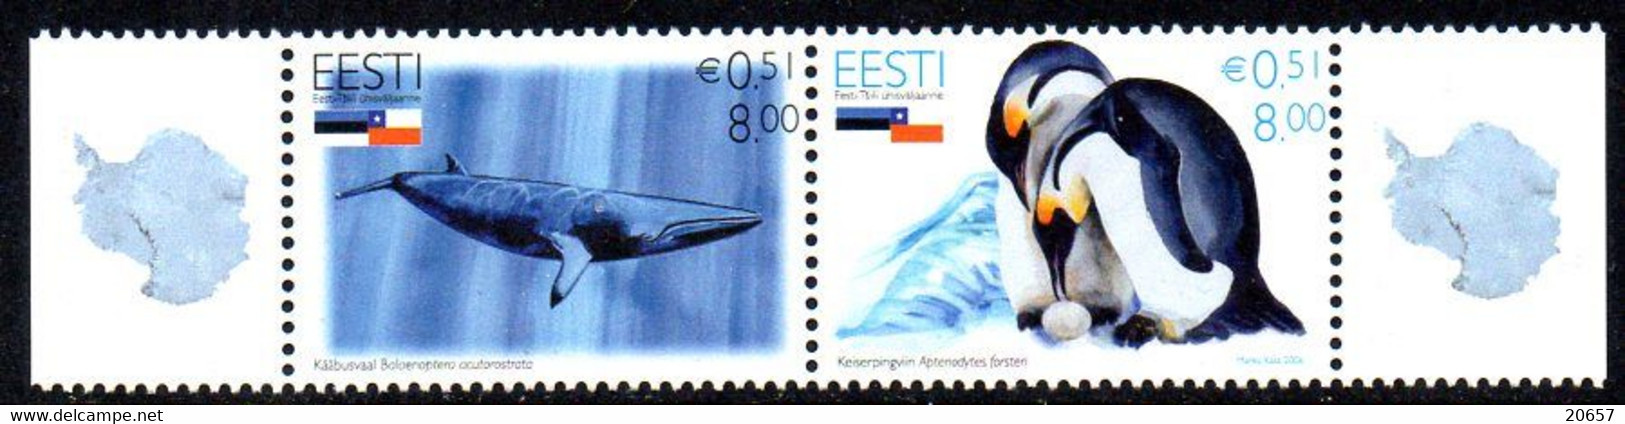 Estonie Eesti 0531/32 Antarctique, Baleine, Pingouin - Fauna Antartica